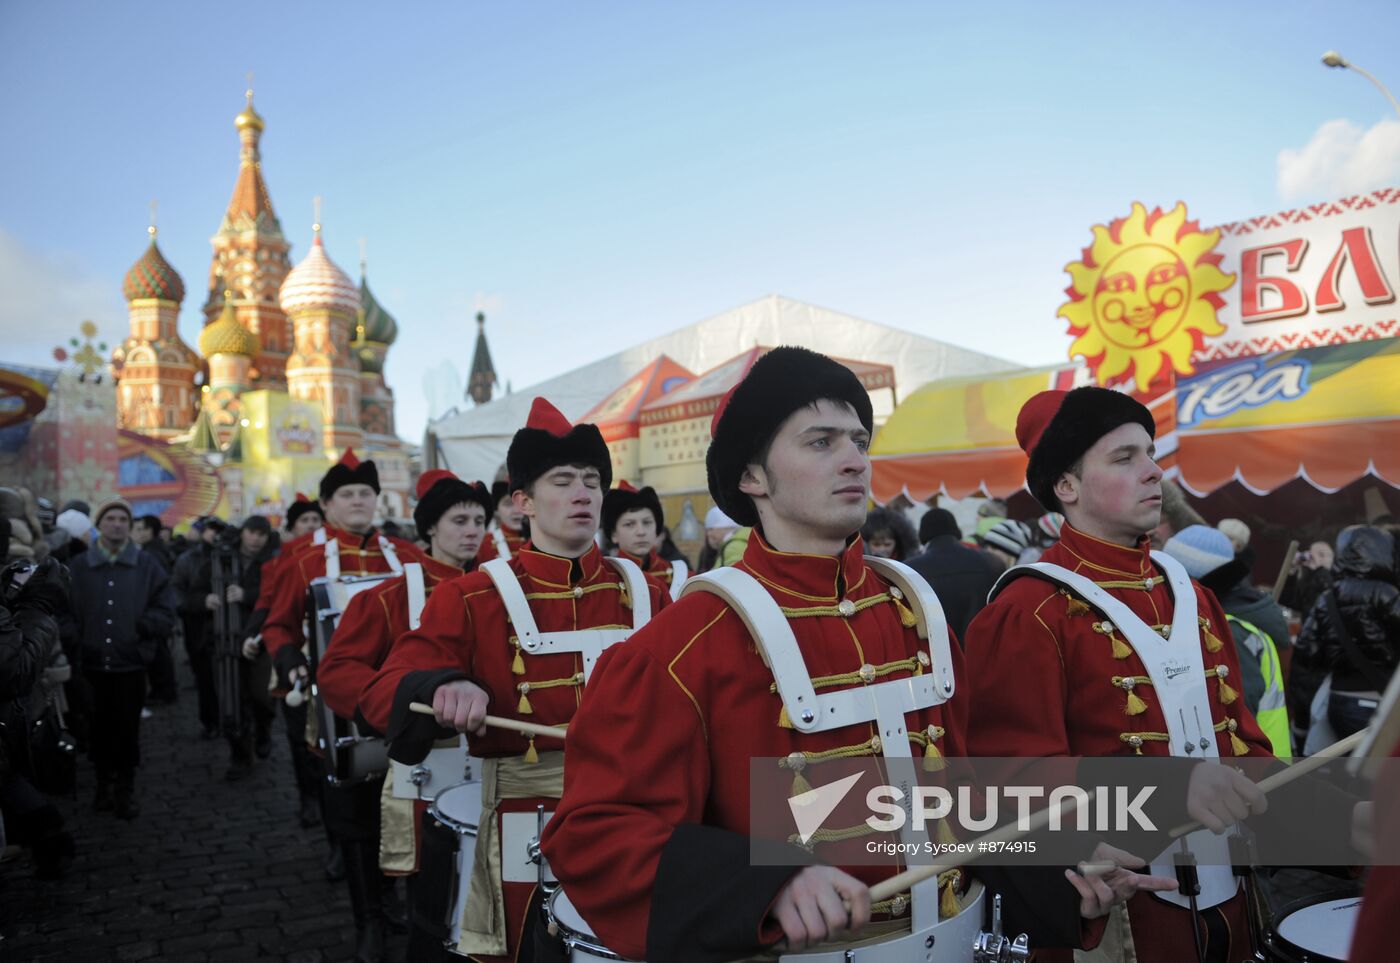 "Shirokaya Maslenitsa" festival on Vasilyevsky spusk